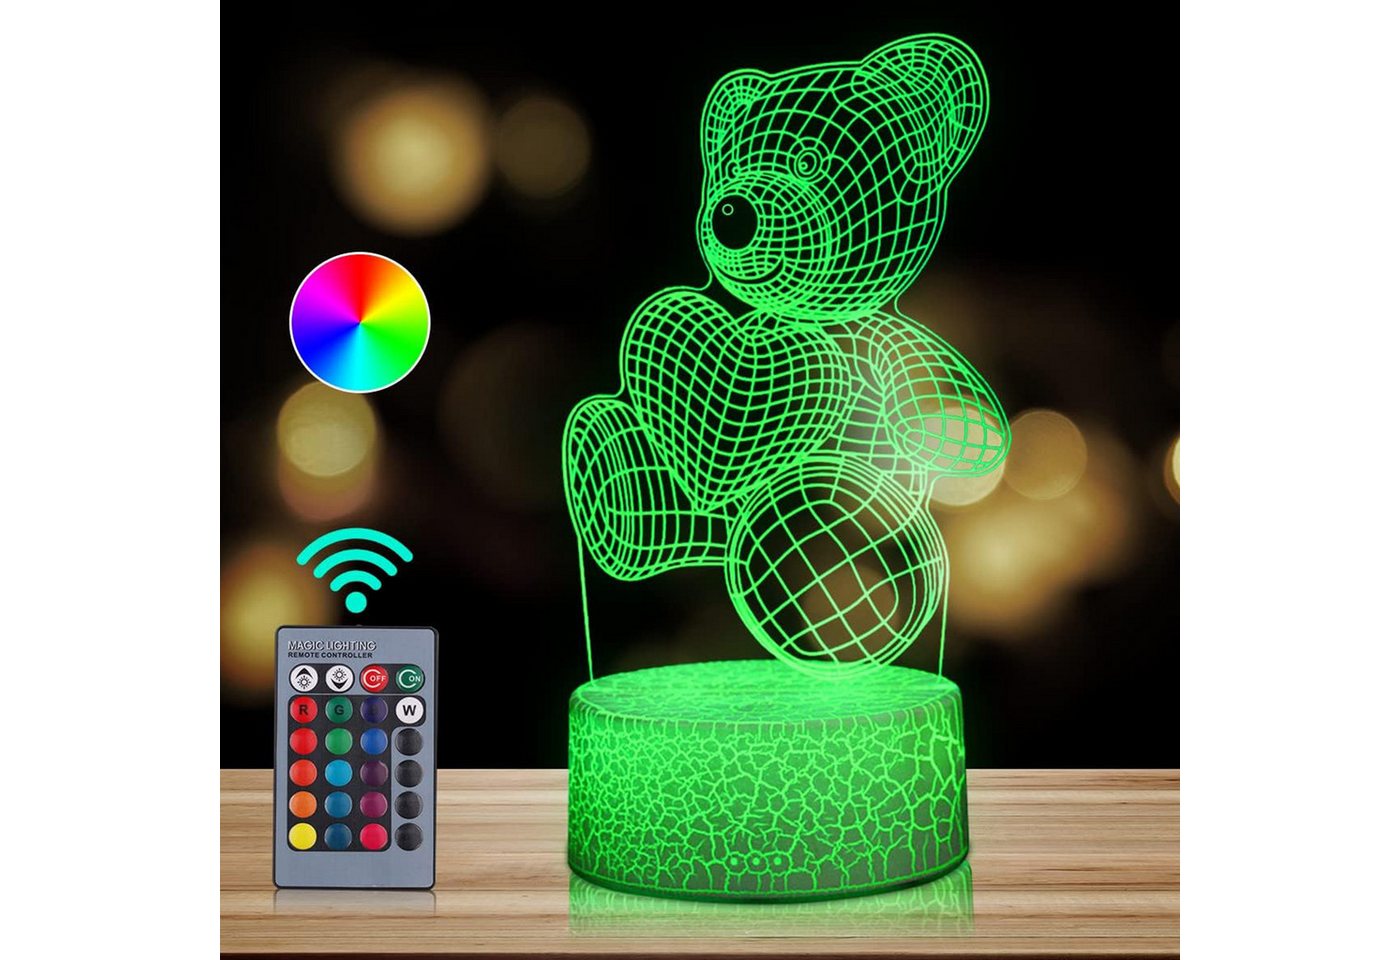 HOUROC Nachttischlampe LED Nachttischlampe, LED Nachtlicht 3D-Illusion, variabel 16 Farben, 16 Farben einstellbar, Mit Fernbedienung, durch Berührung einstellbar von HOUROC